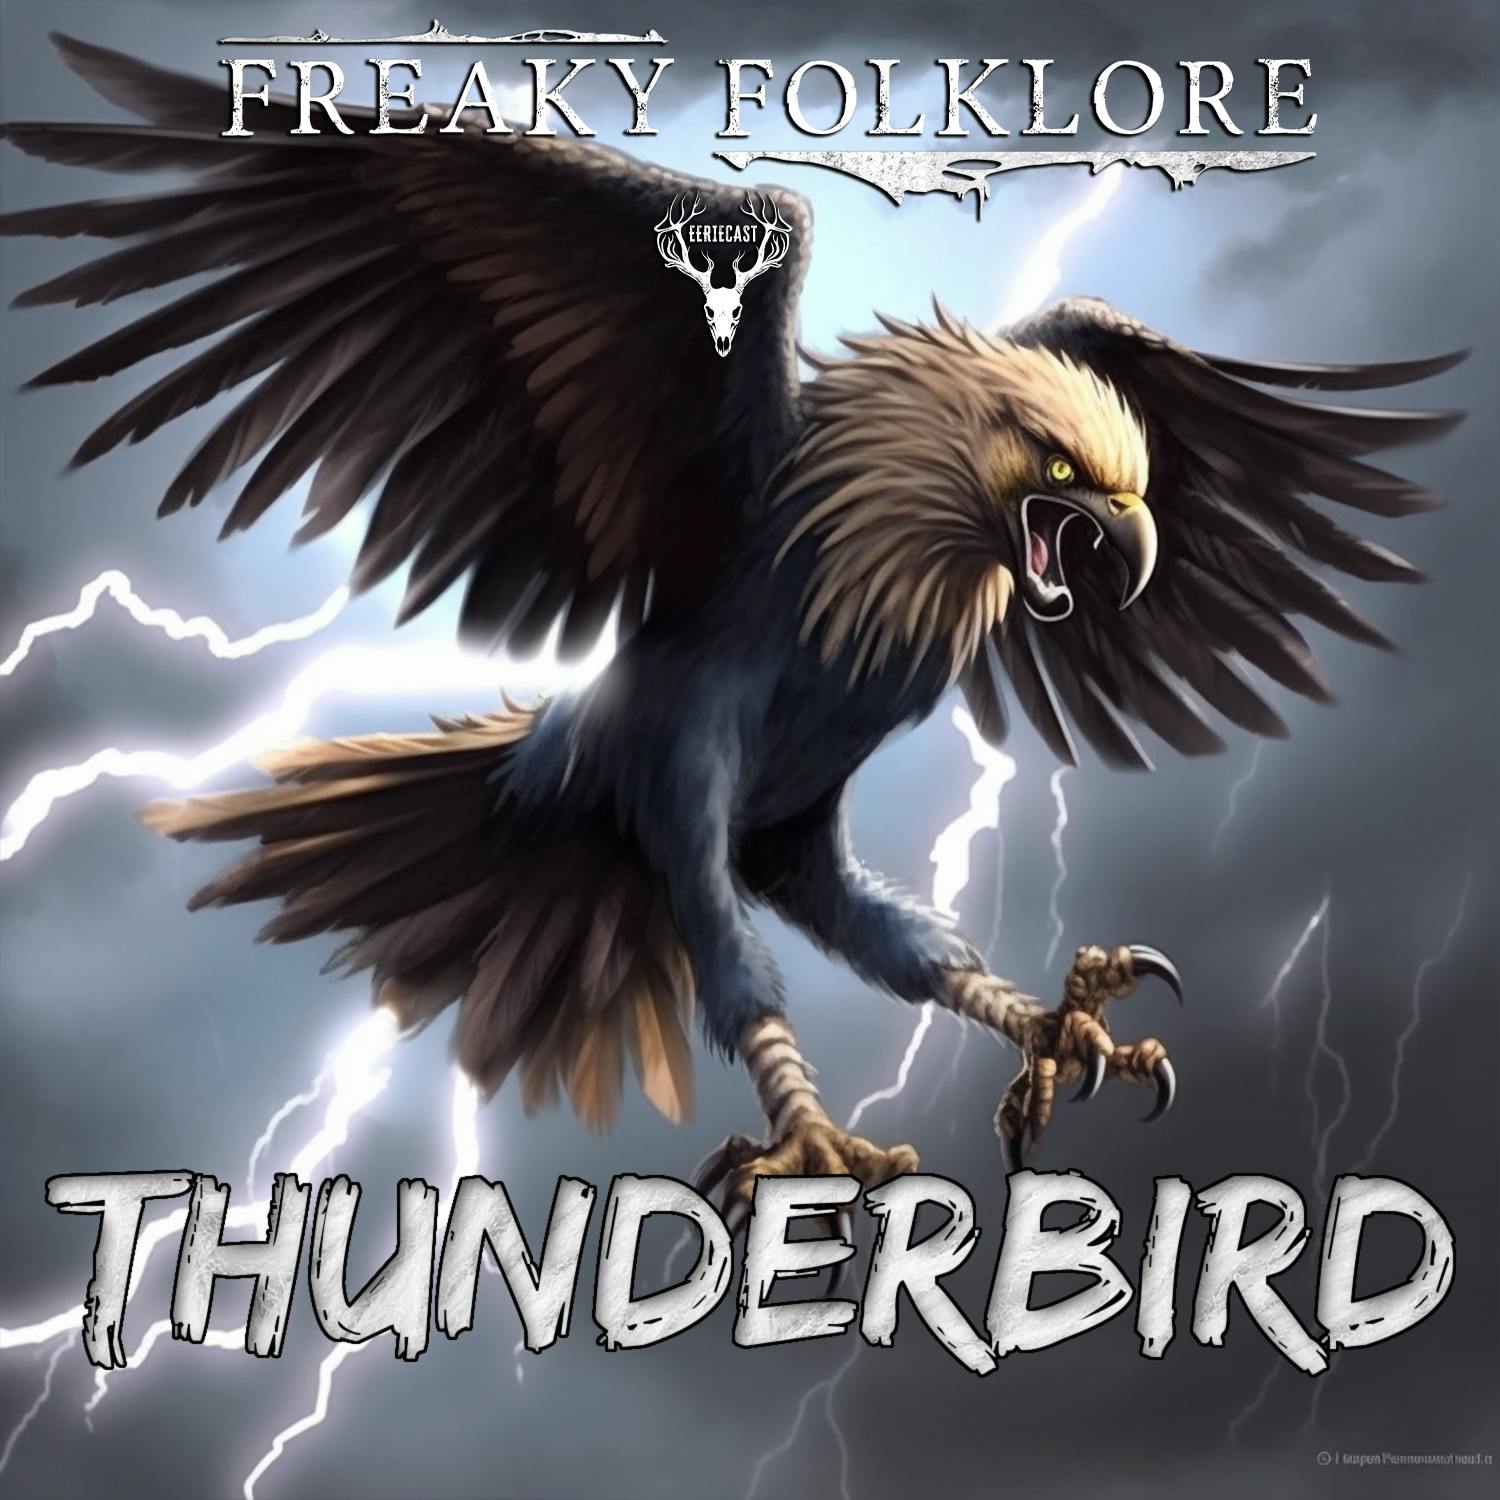 Thunderbird - A Supernatural Bird of Legendary Power and Strength